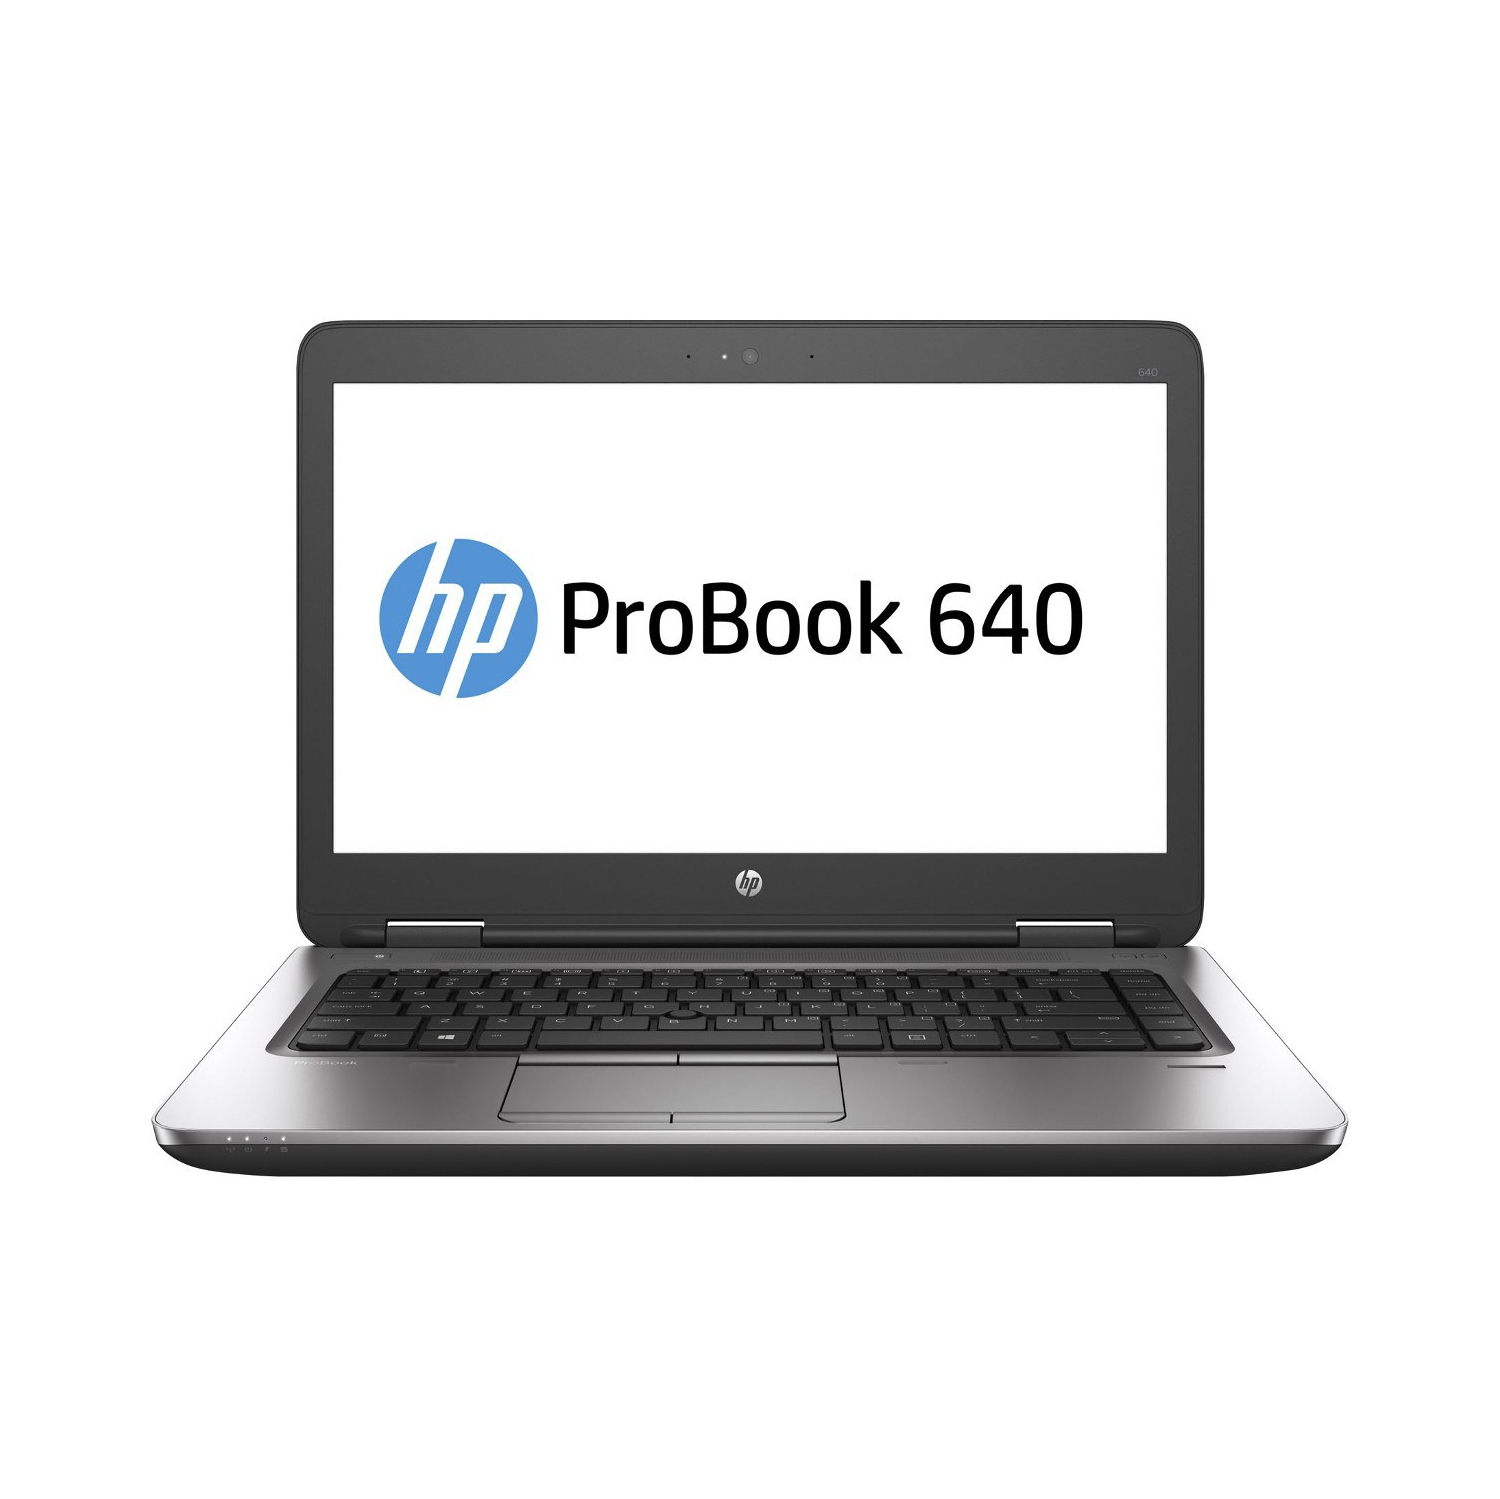 Refurbished (Excellent) - HP ProBook 640 G2 14" Laptop, Intel Core i7 6600U up to 3.4 GHz, 12G DDR4, 512G SSD, VGA, DP, Win10P64 (EN/FR/ES)